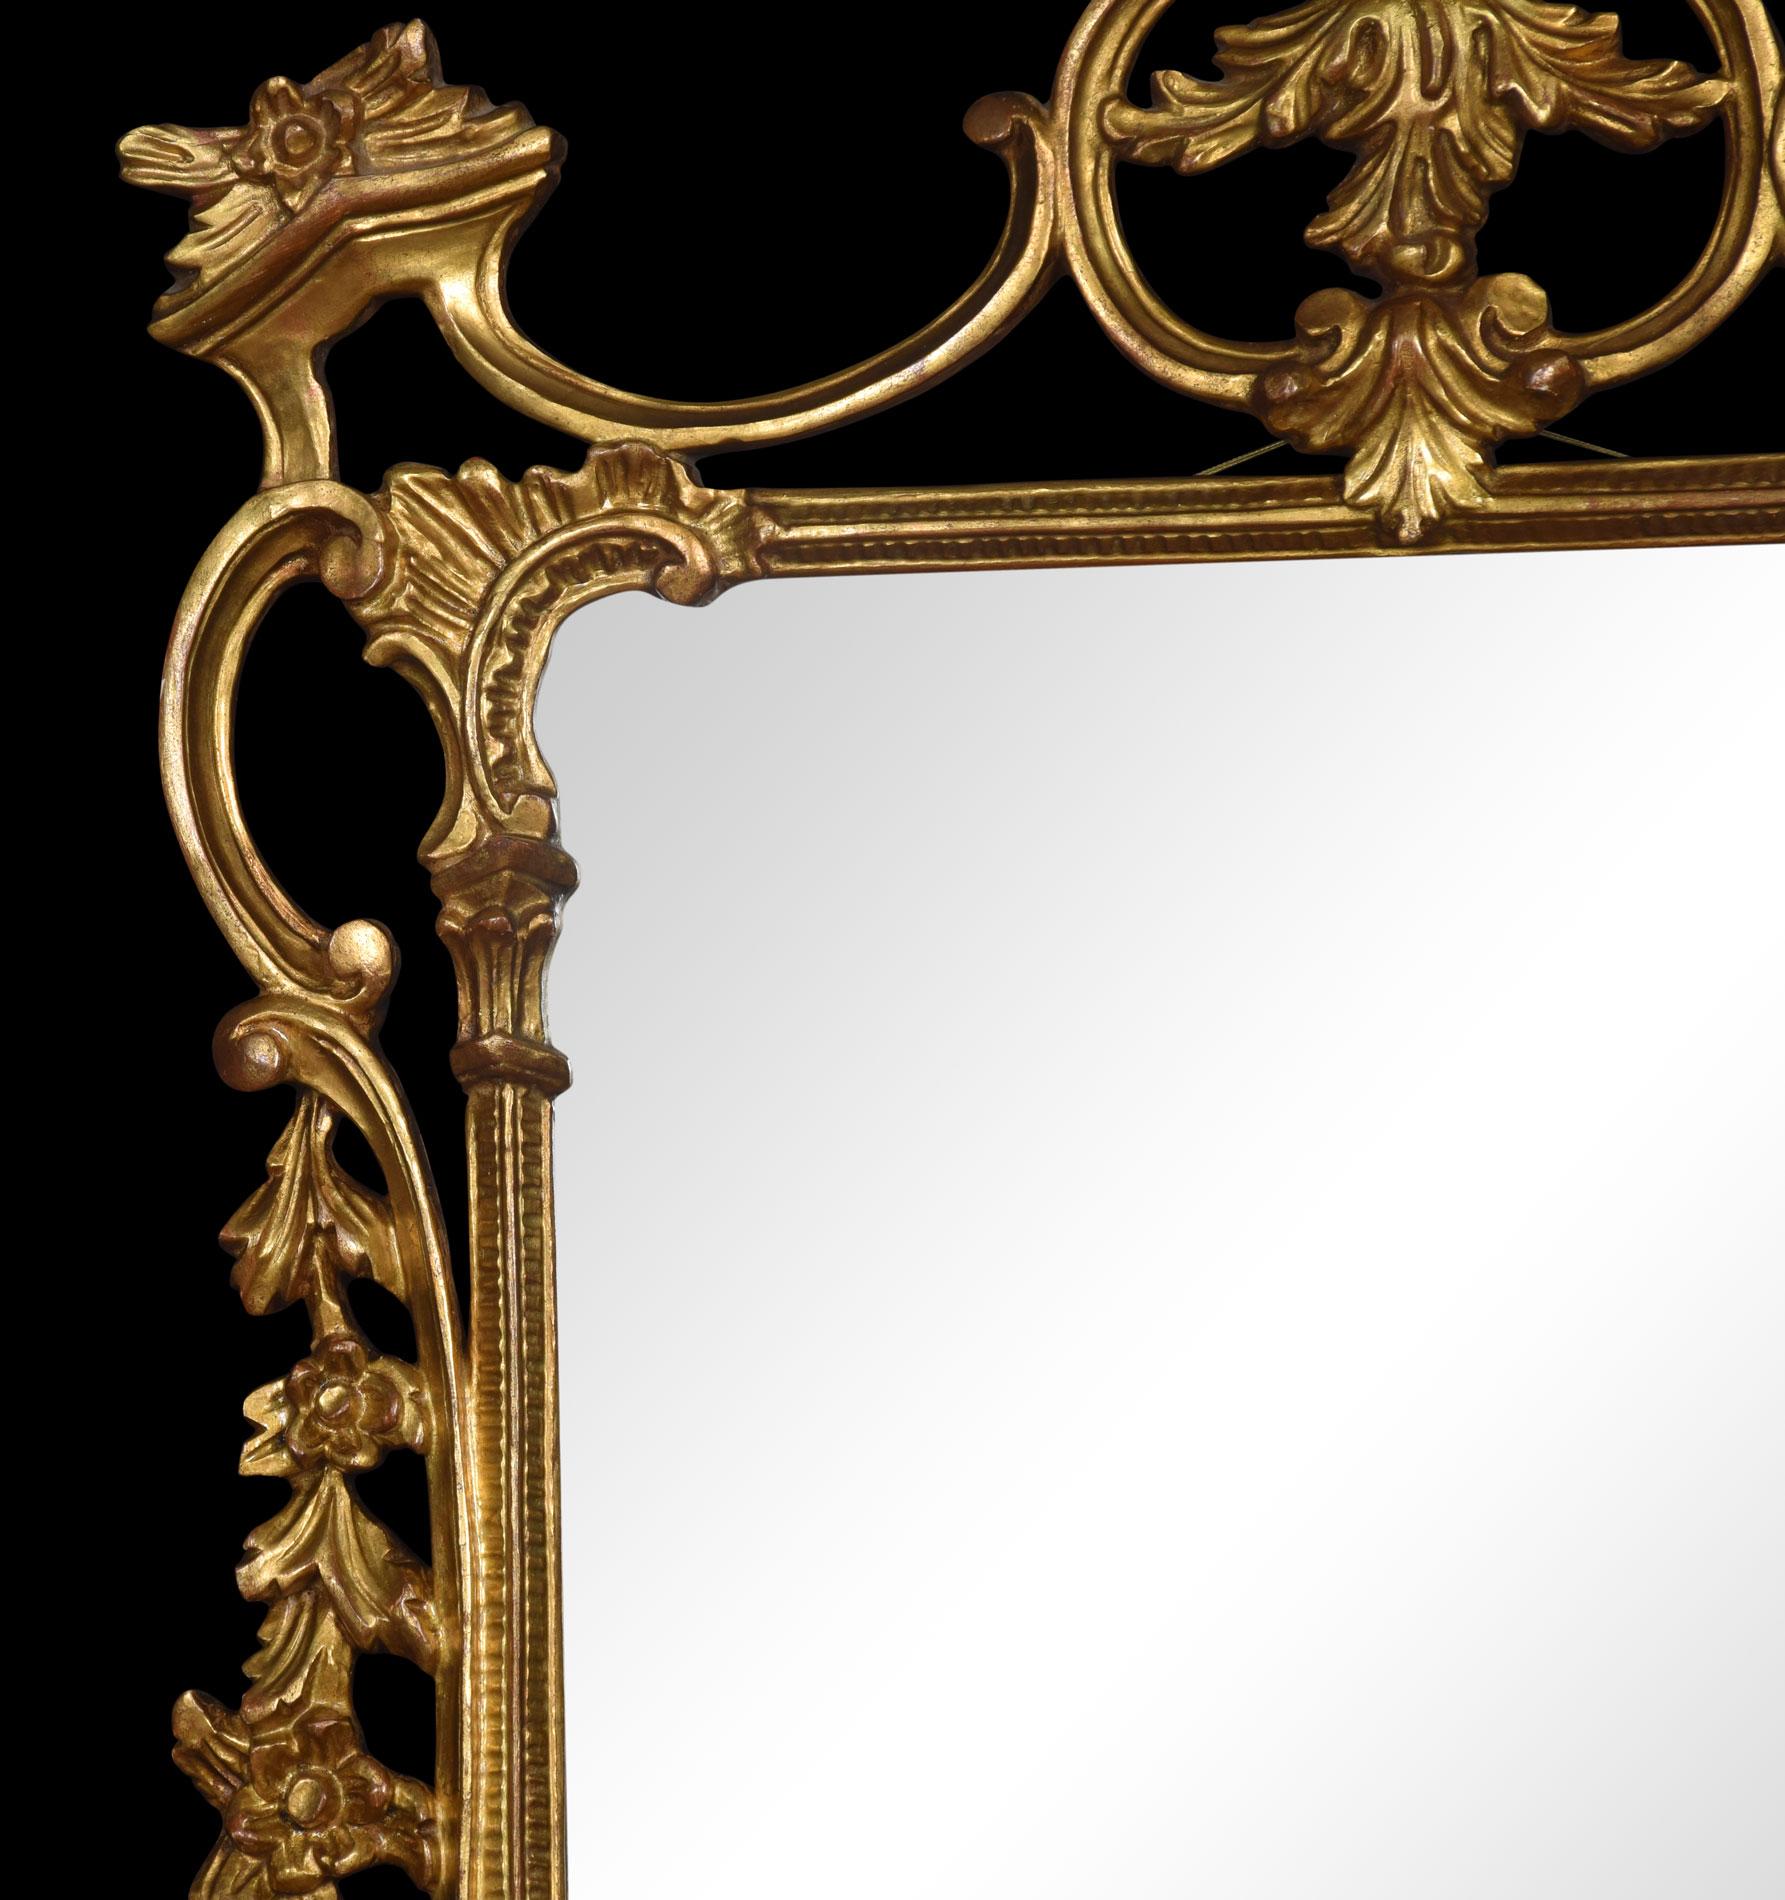 20th Century Rococo Revival Giltwood Mirror